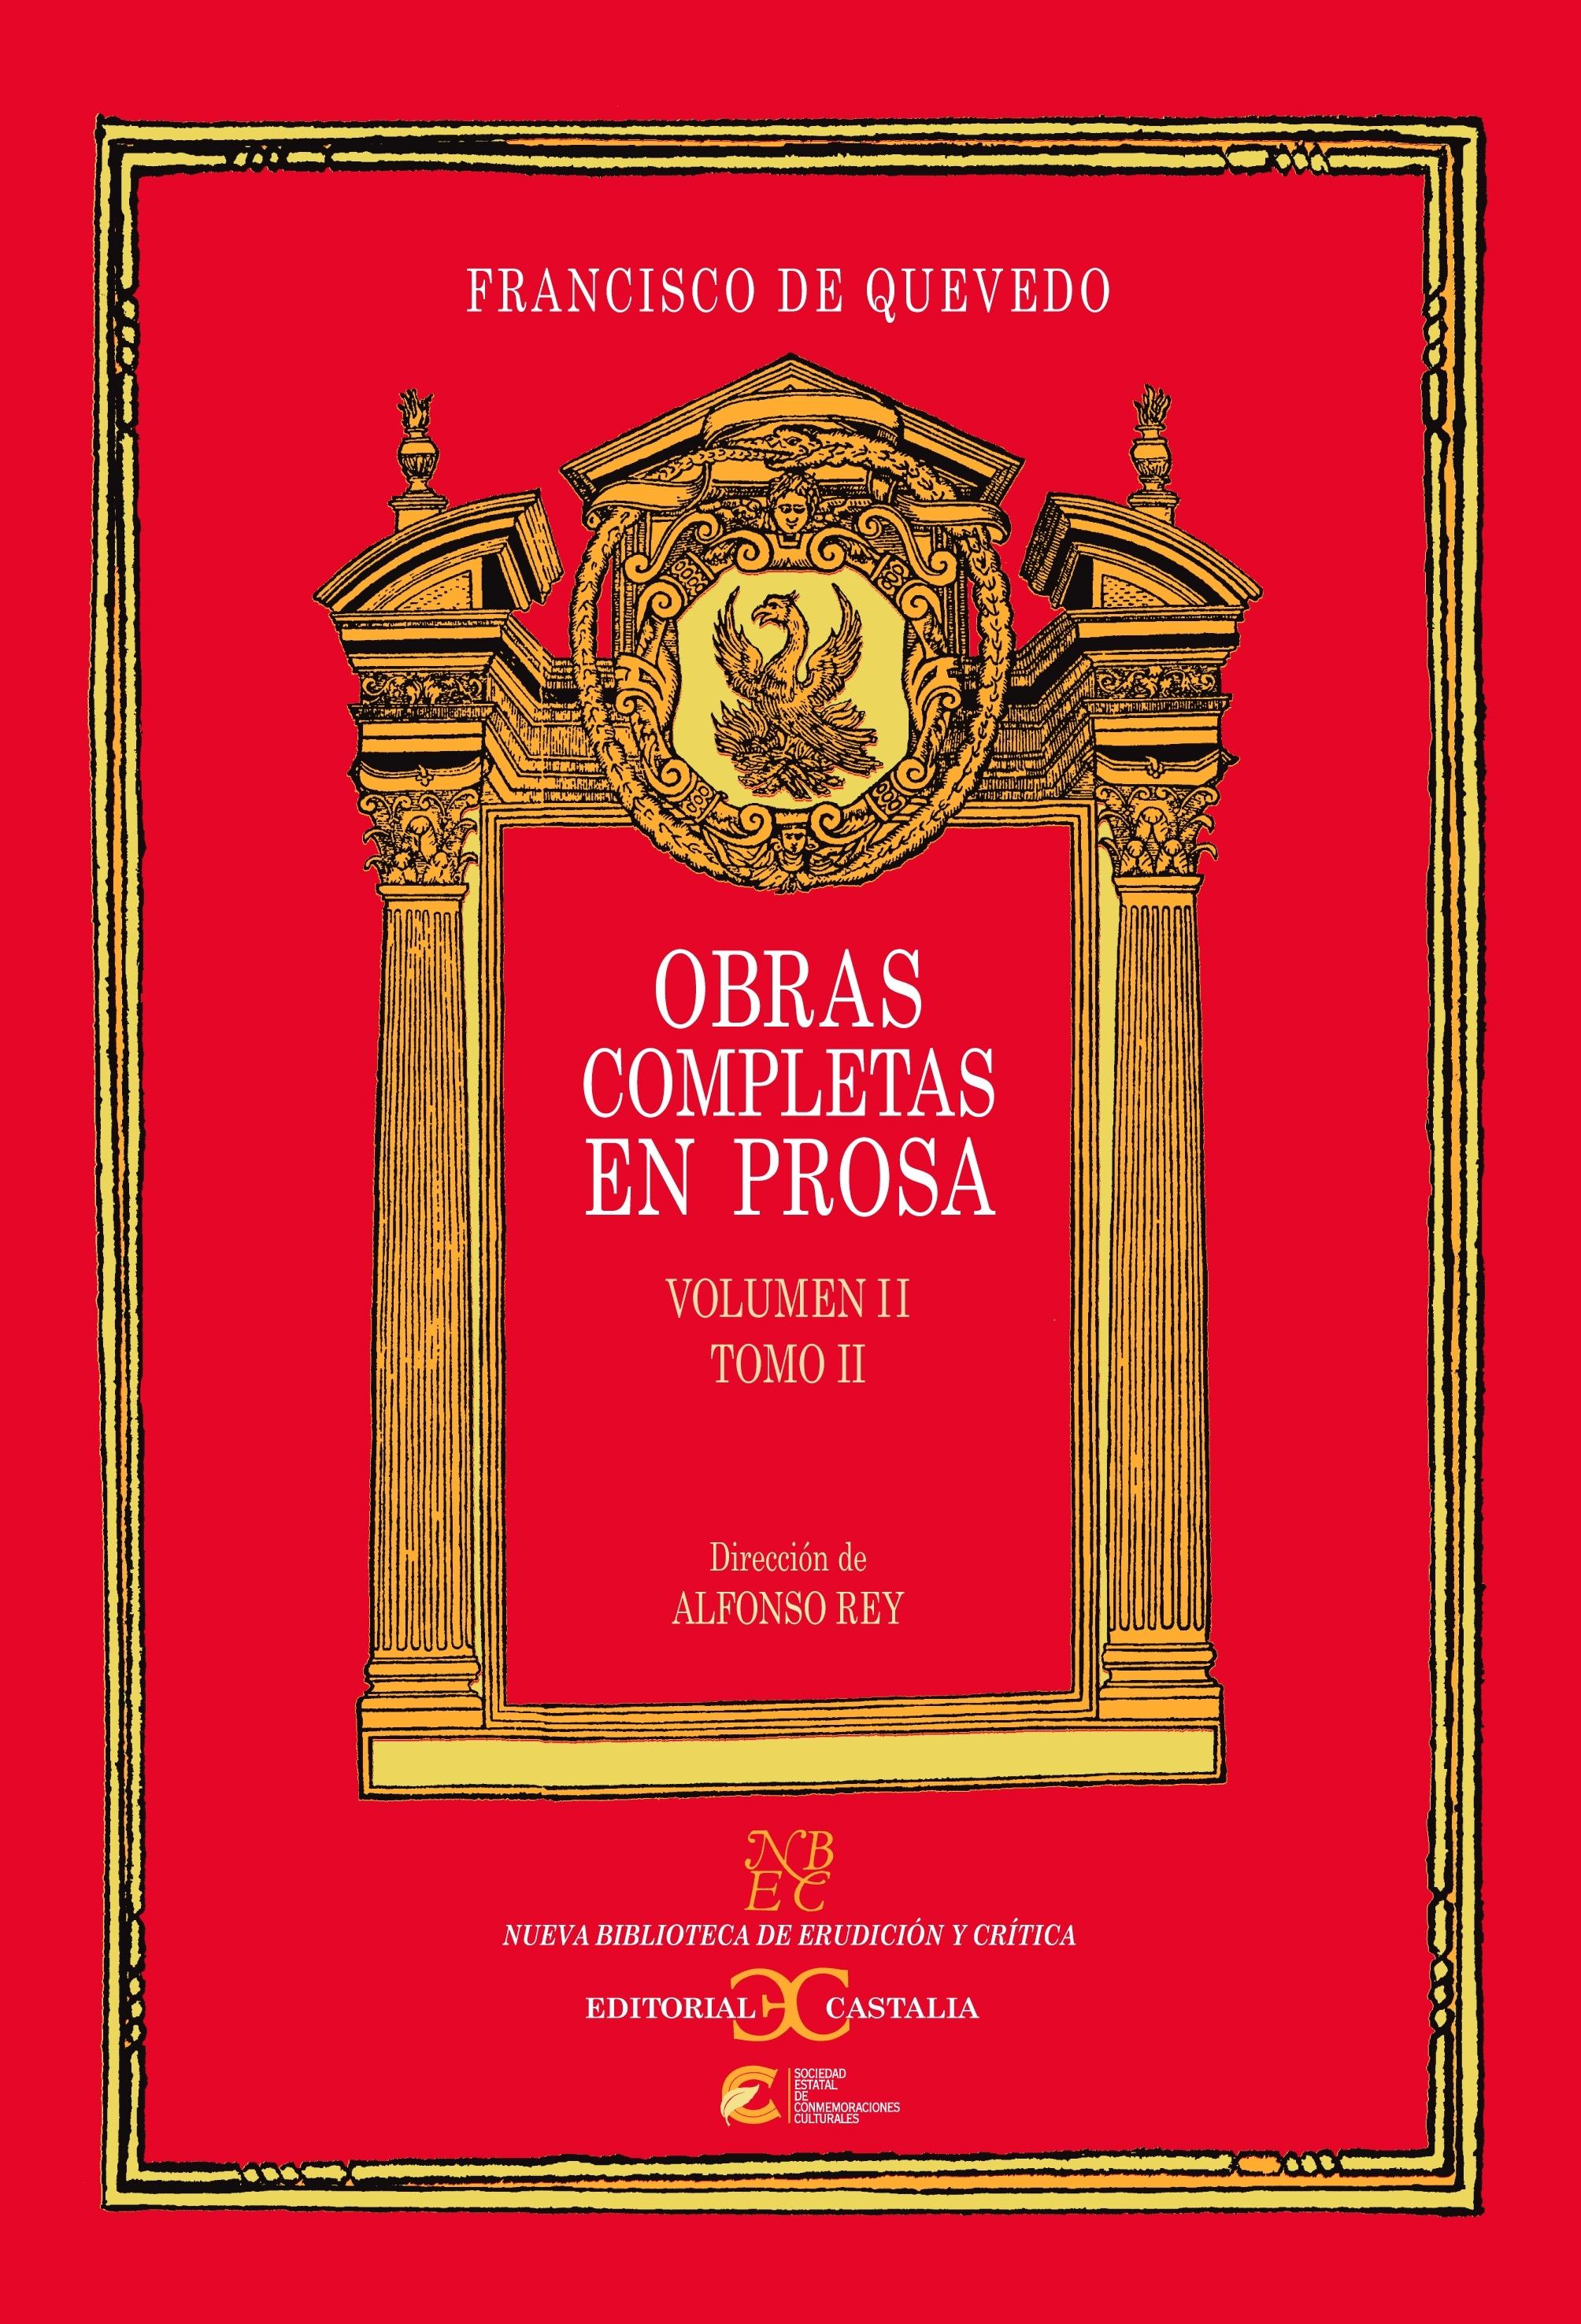 Obras completas en prosa - Volumen 2 - Tomo 2 "(Francisco de Quevedo)"